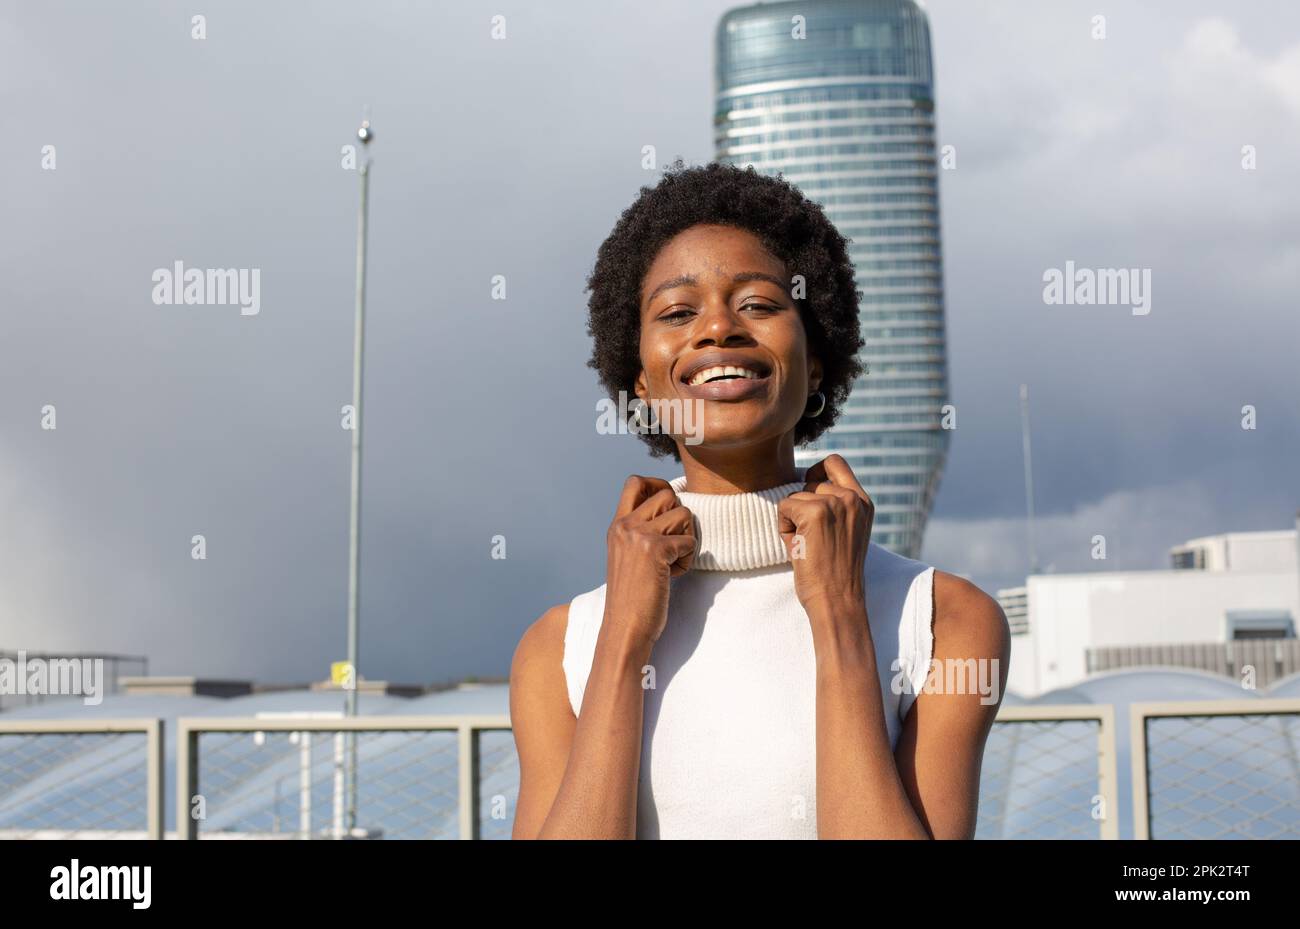 Afro girl fashion Stock Photo